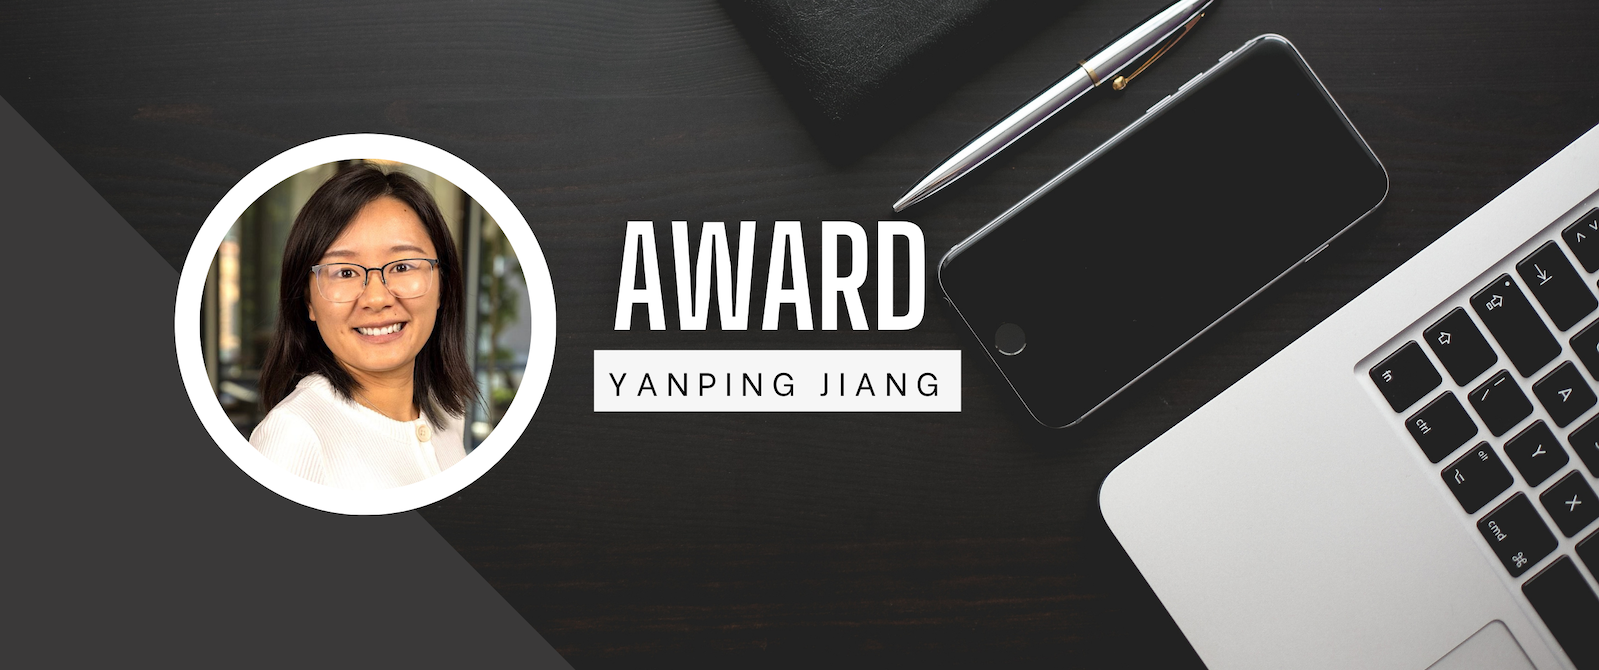 Award - Yanping Jiang